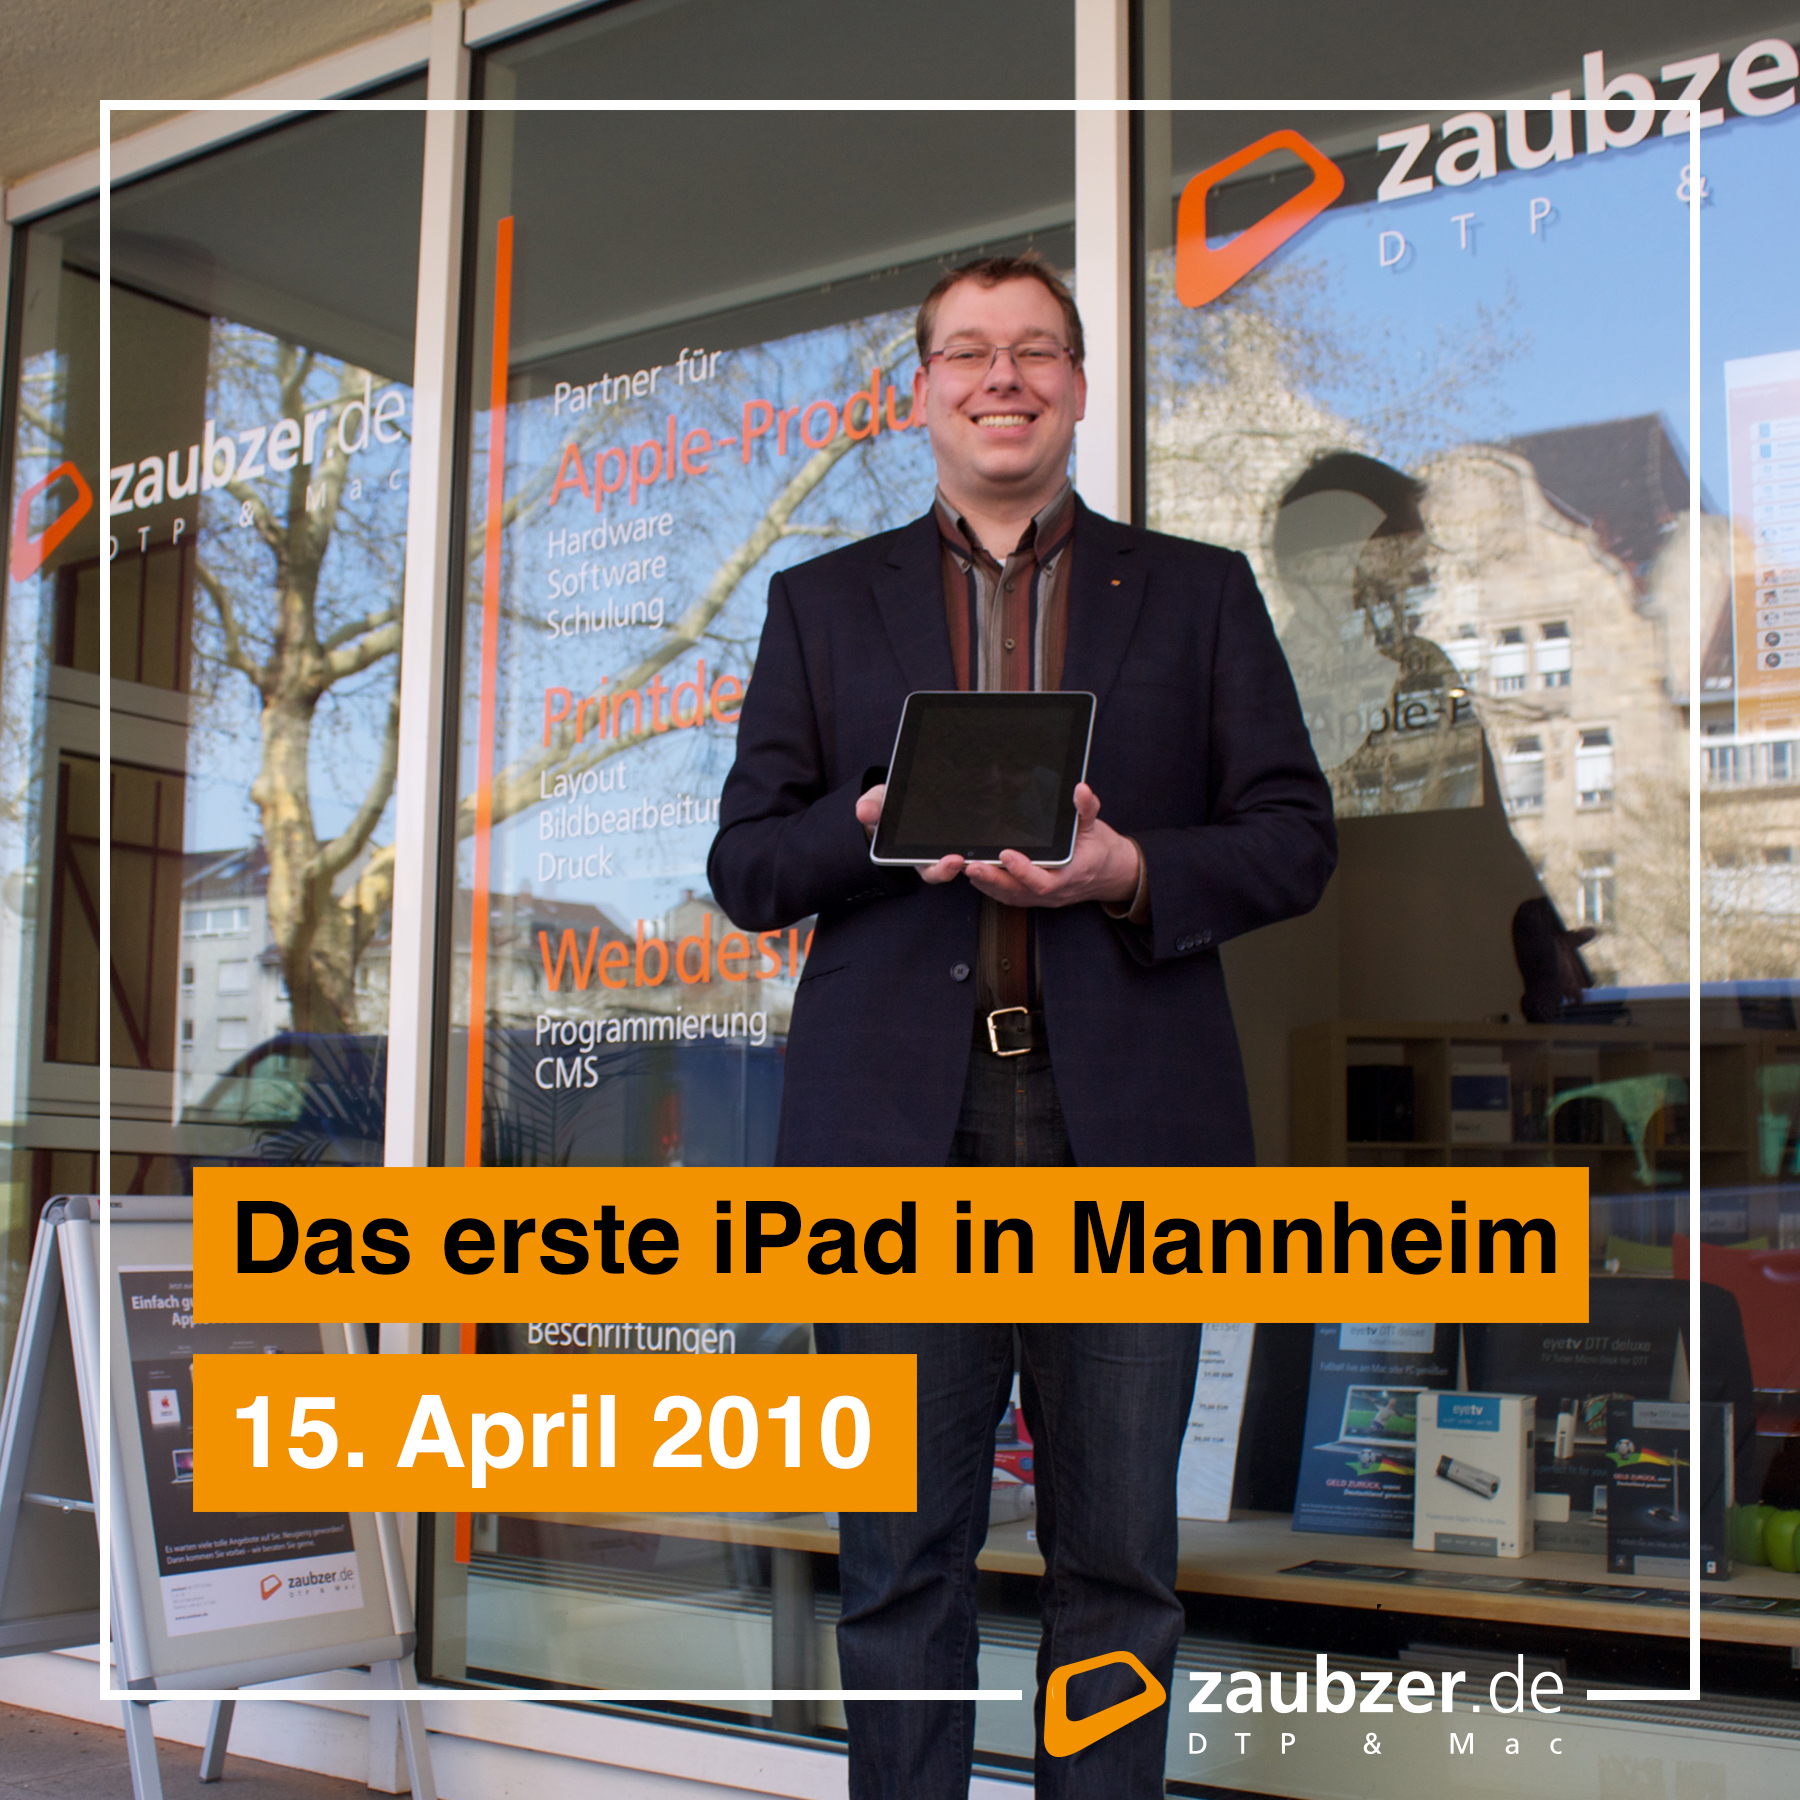 zaubzer.de hatte das erste Apple iPad in Mannheim